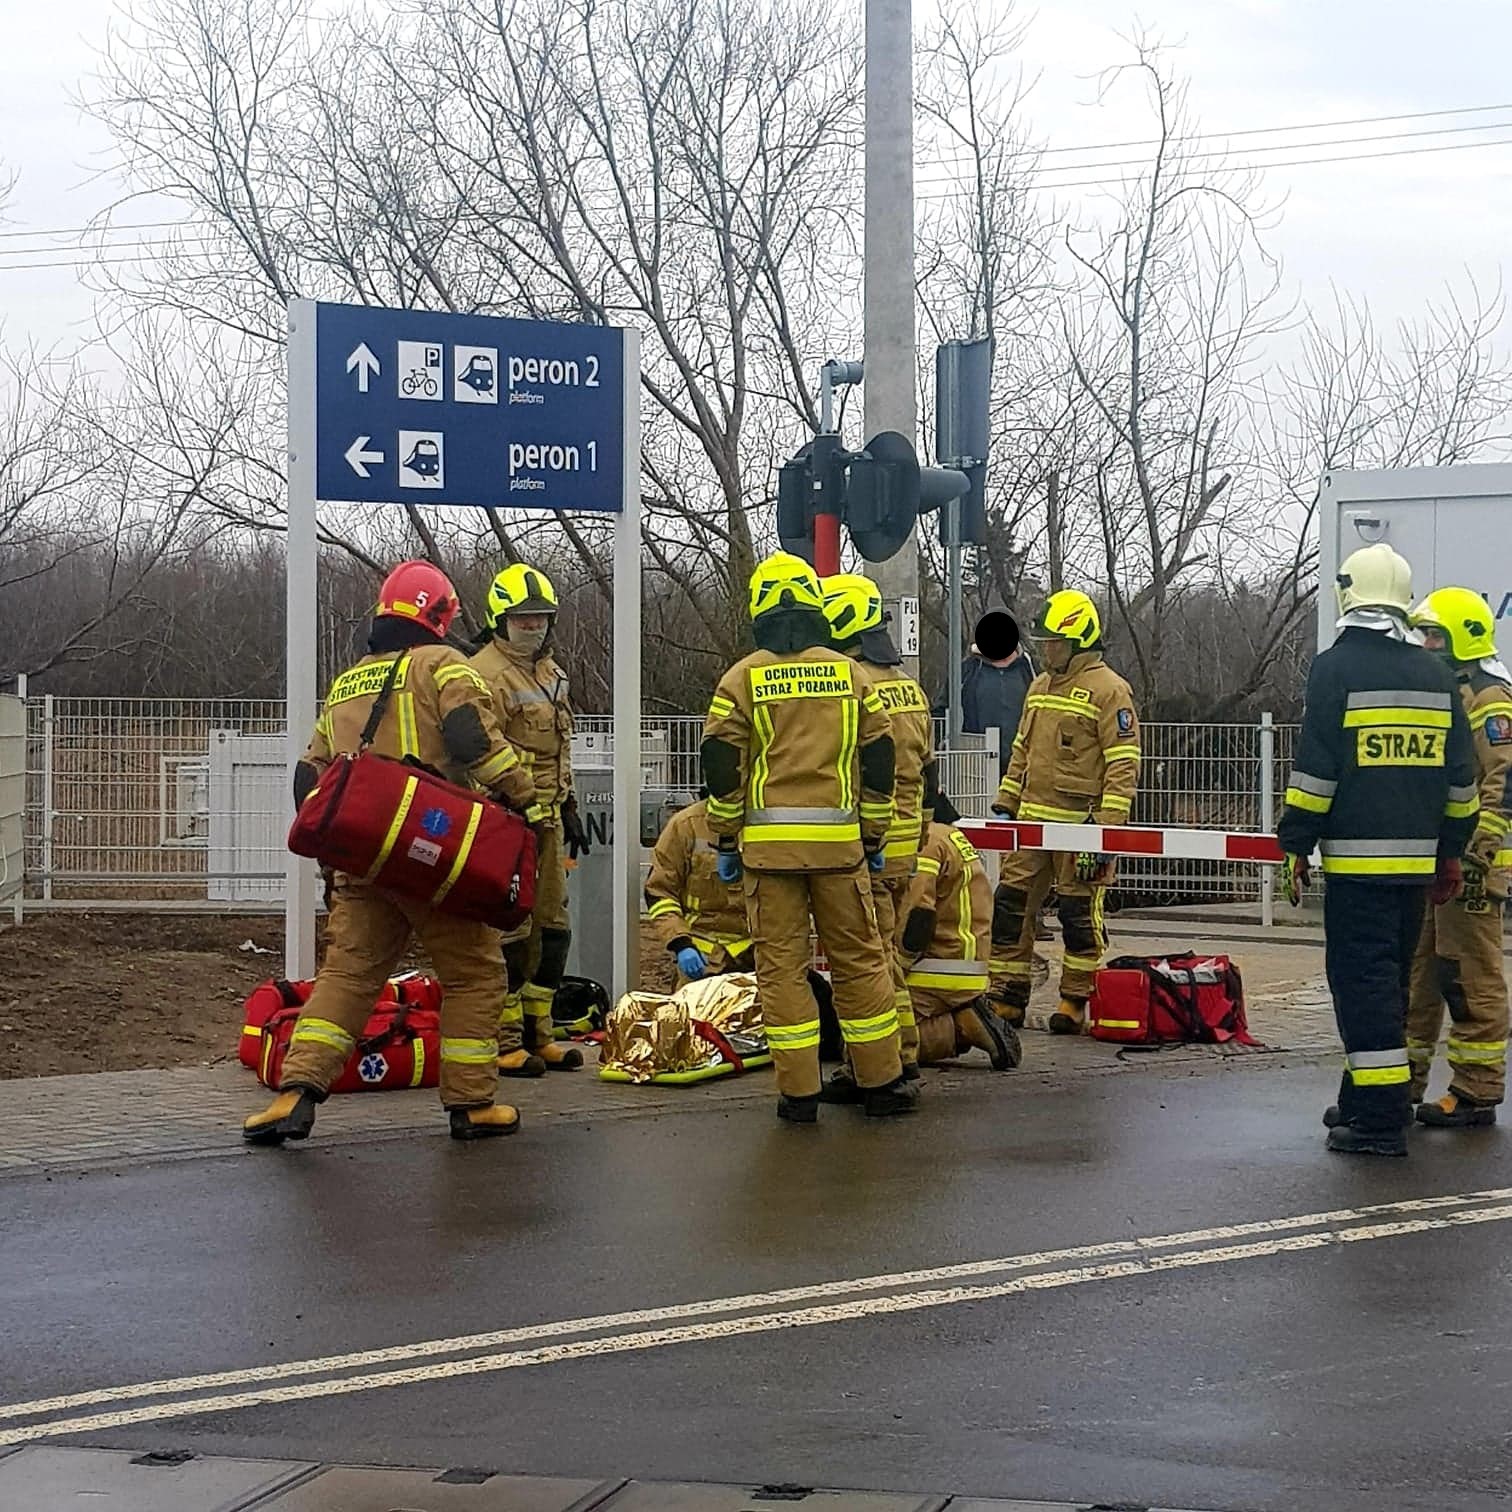 Strażacy udzielają pierwszej pomocy poszkodowanemu